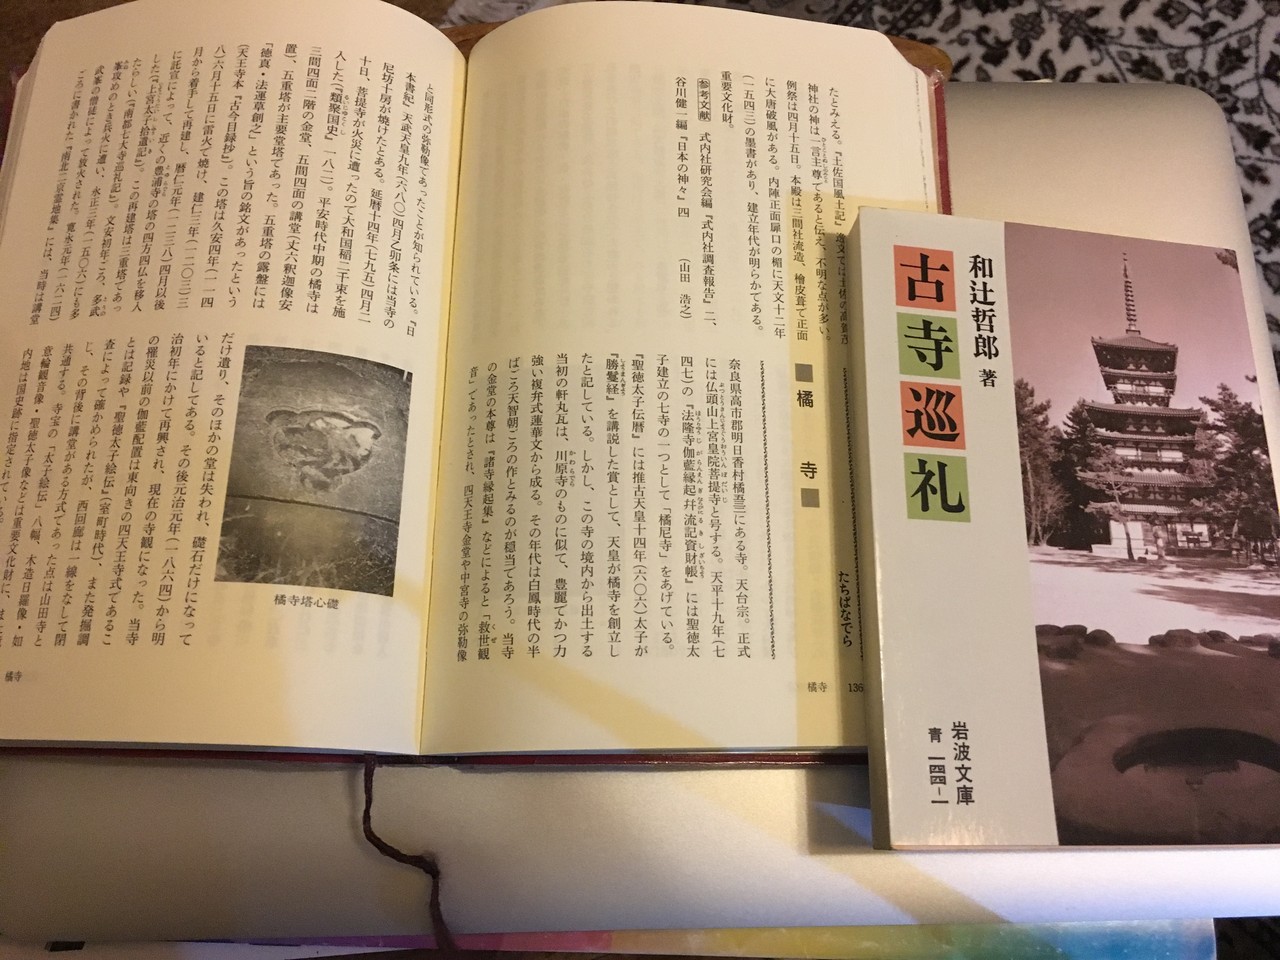 トラスト 奈良古社寺辞典